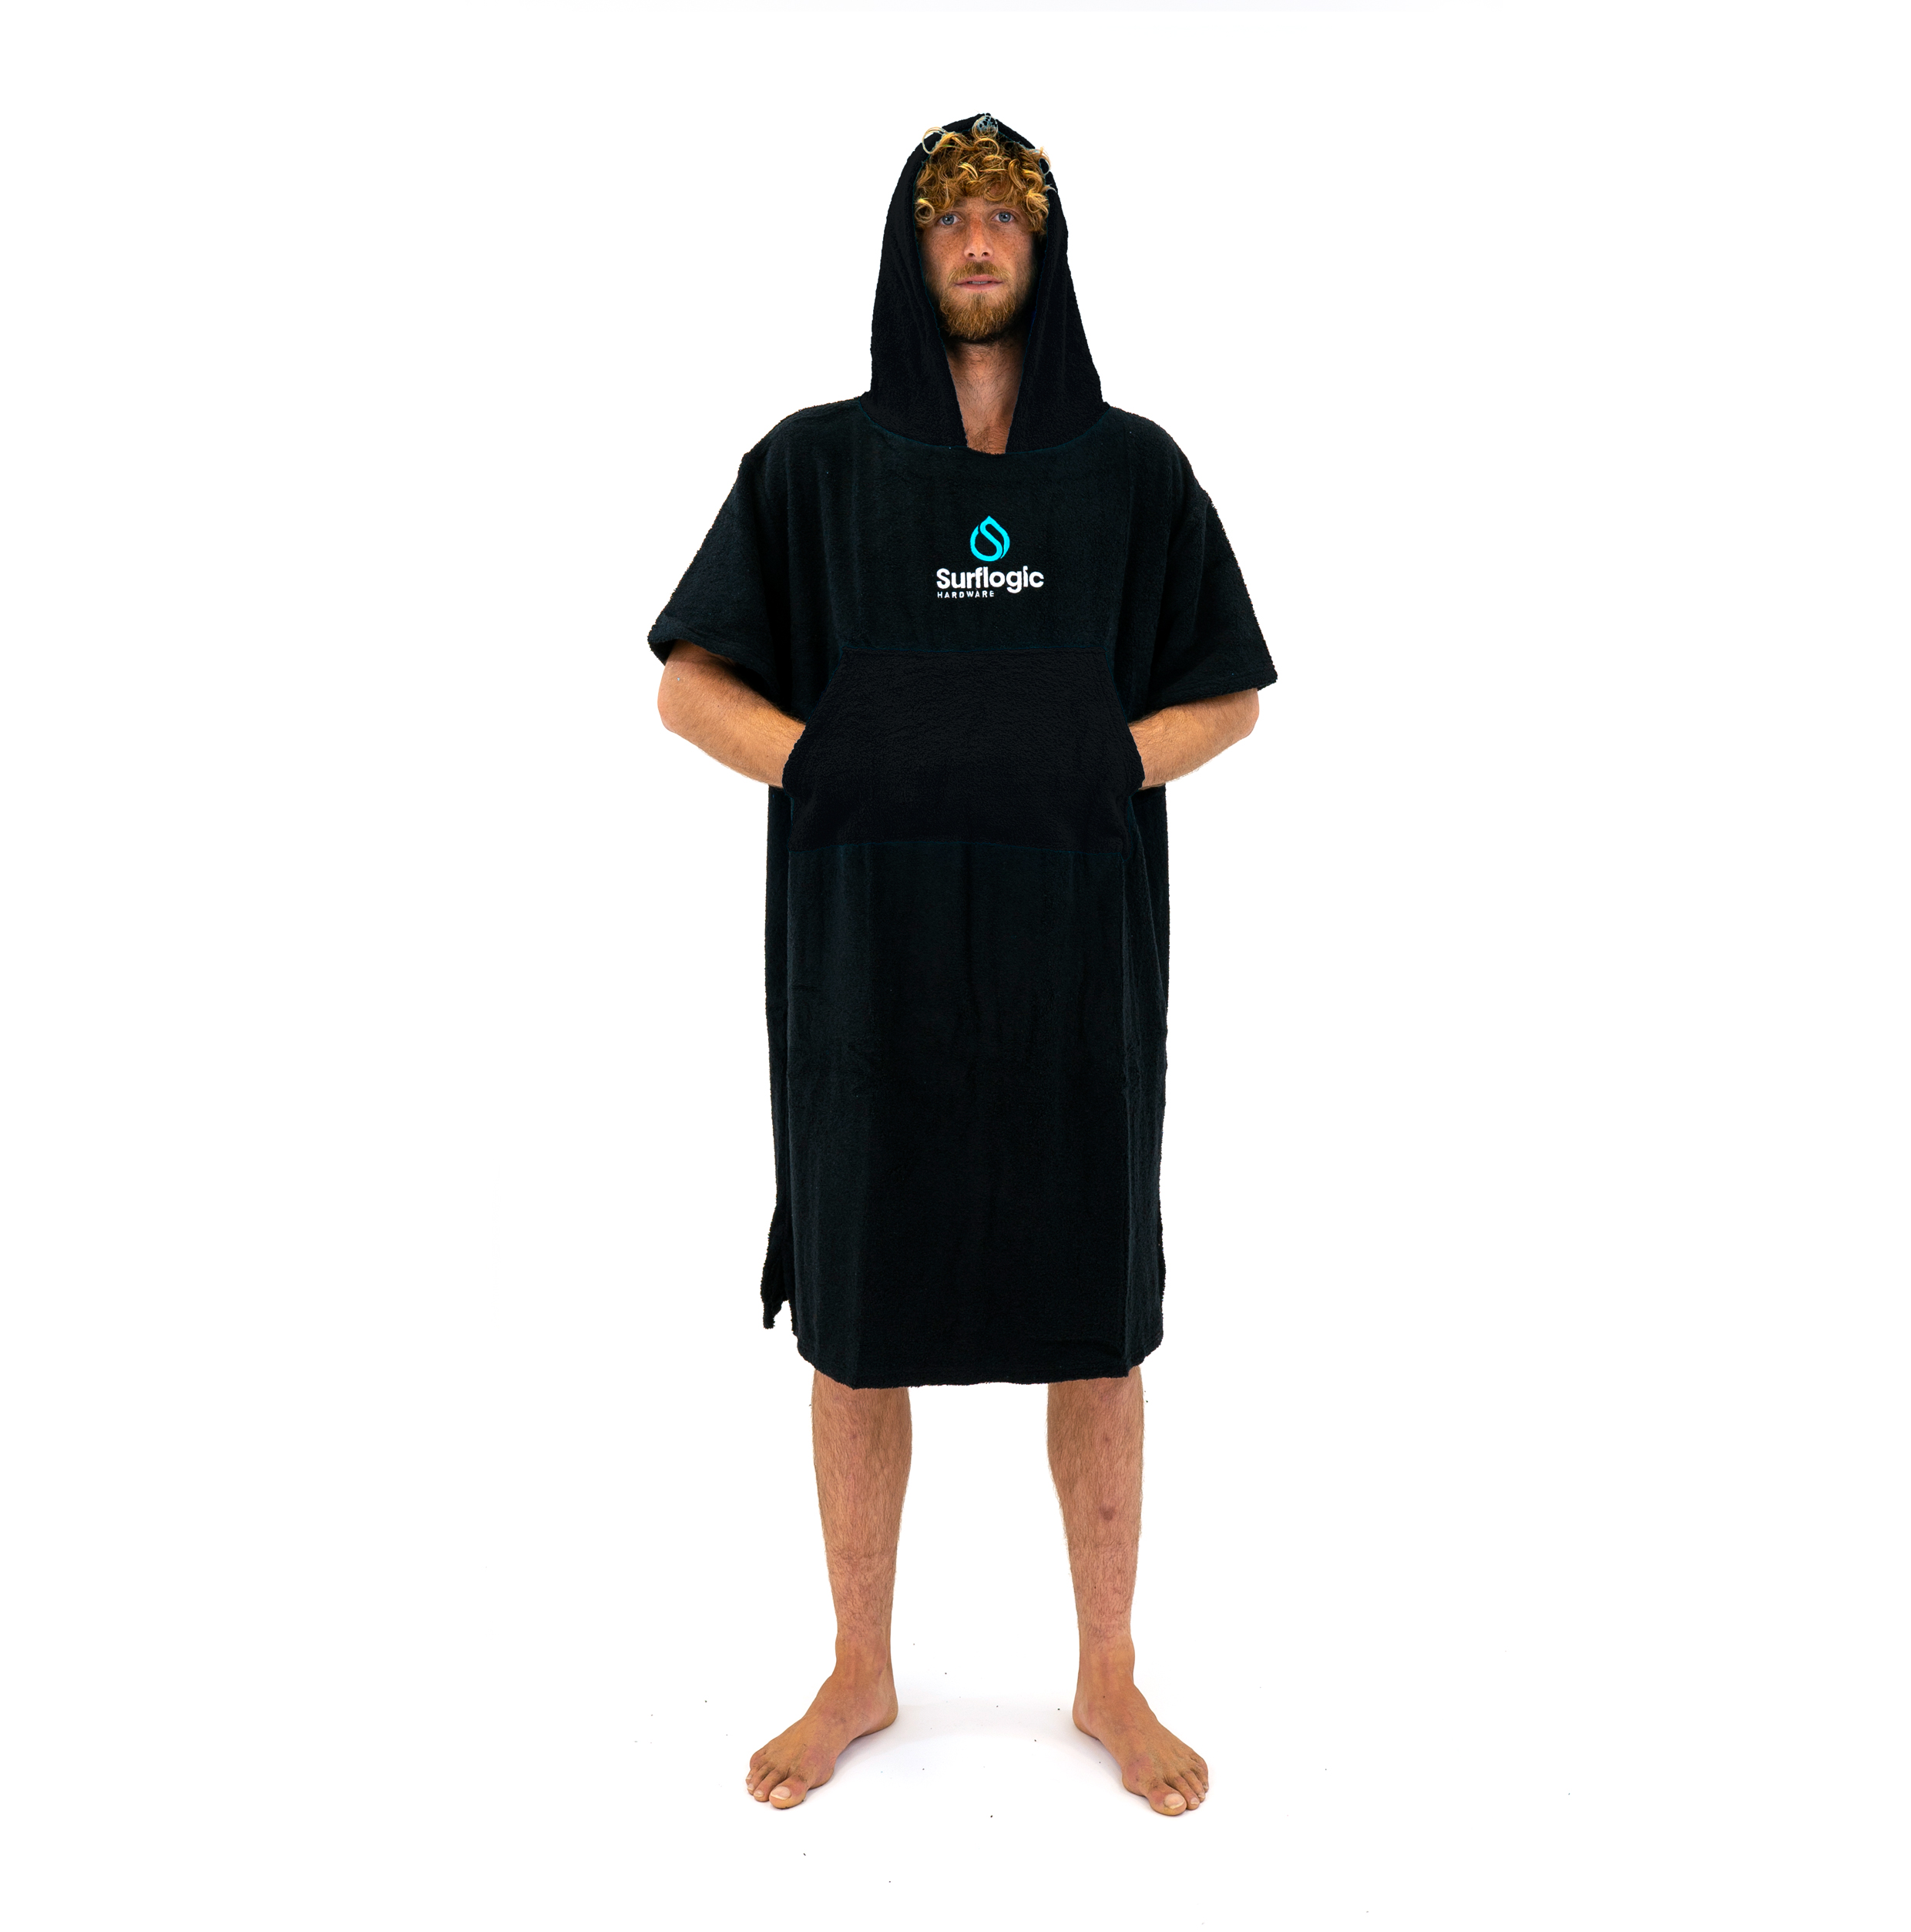 comprar poncho surf toalla barato tienda de surf online multimarca